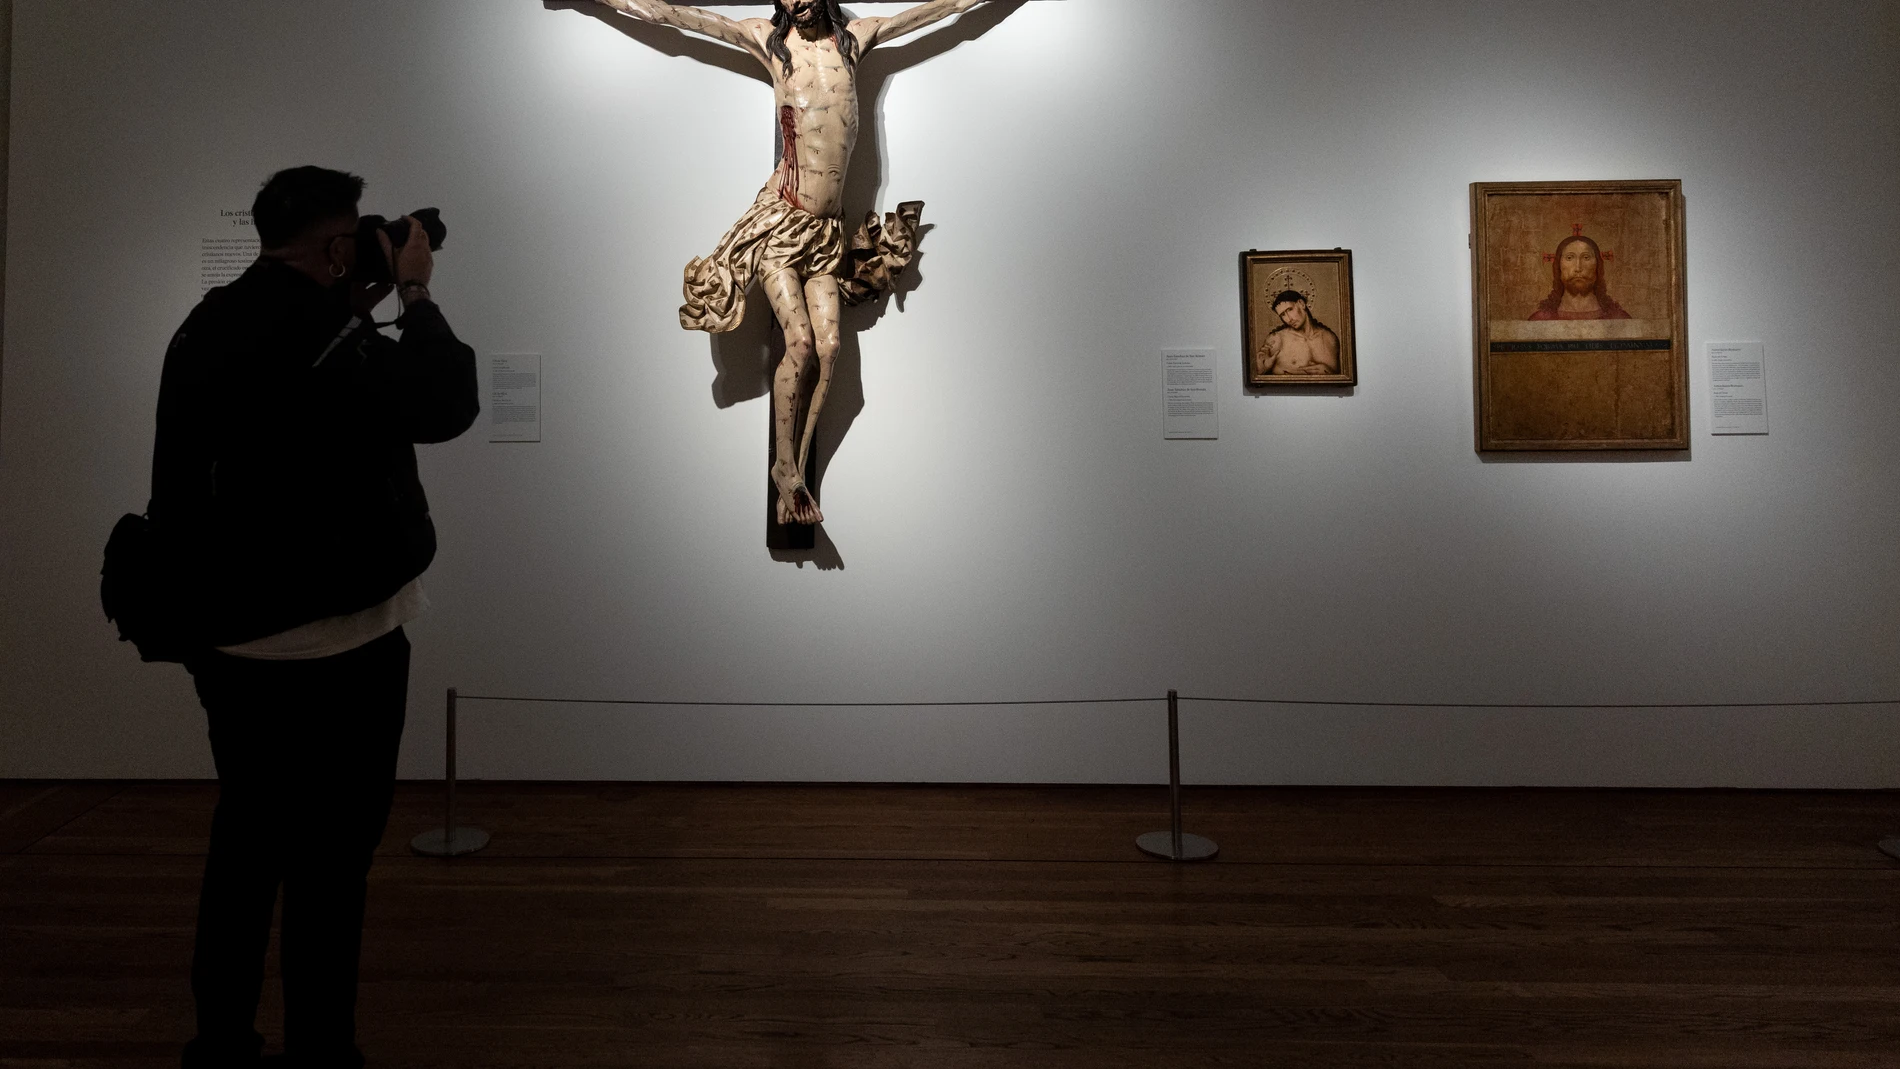 El Museo del Prado mira "sin prejuicios" a la época de "intolerancia" entre judíos y cristianos en la Edad Media